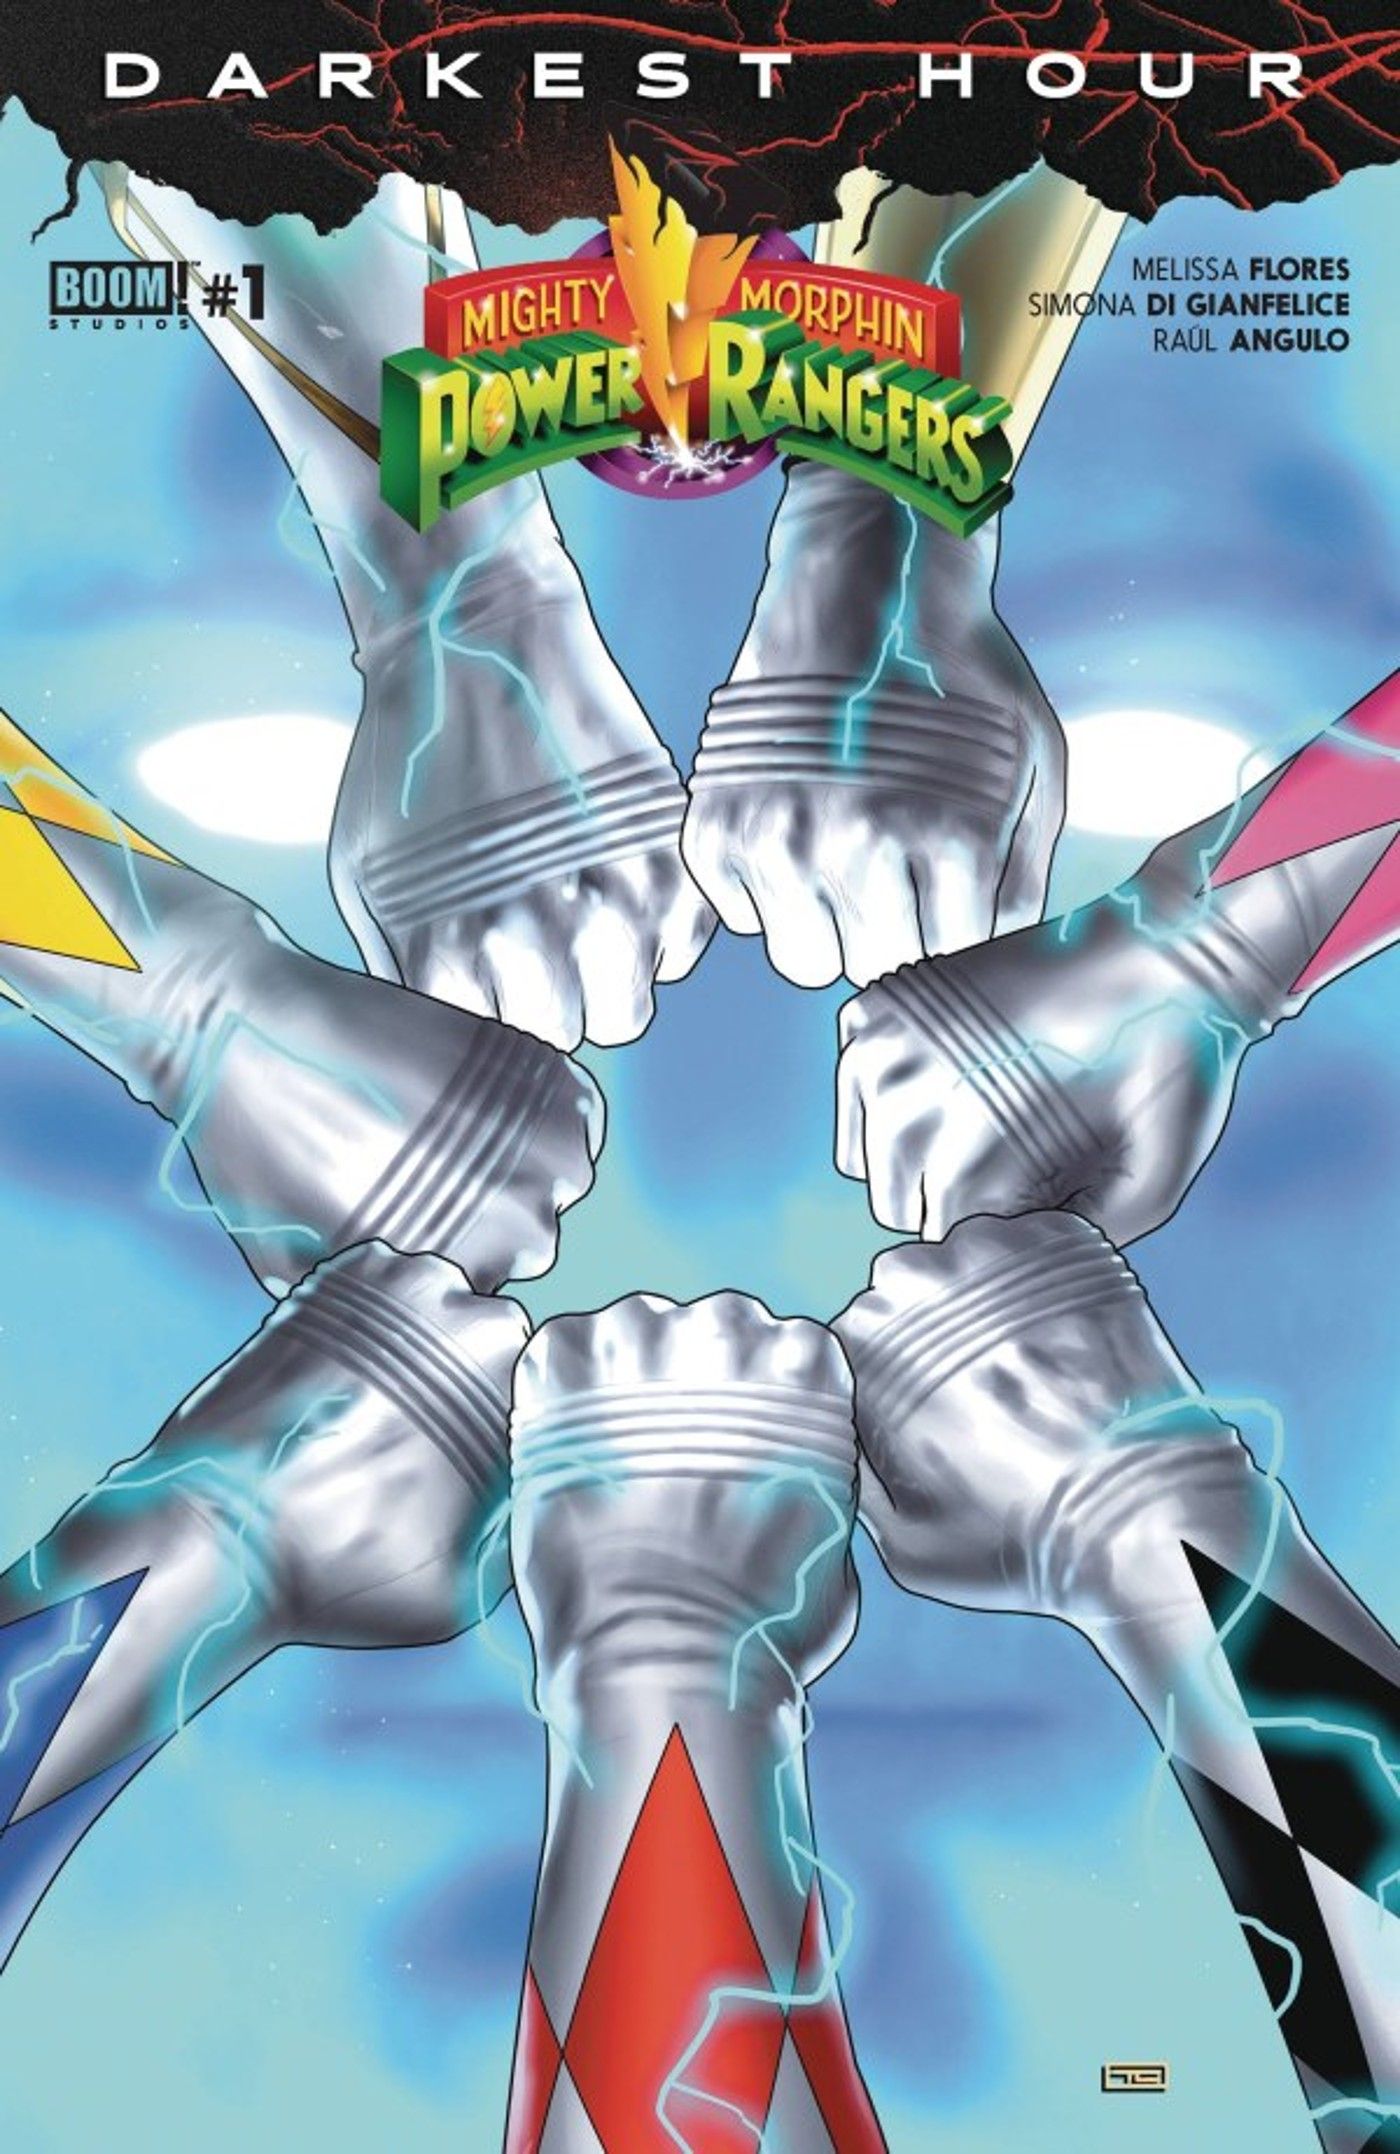 Capa do Mighty Morphin Power Rangers Darkest Hour #1 mostrando a equipe juntando os punhos